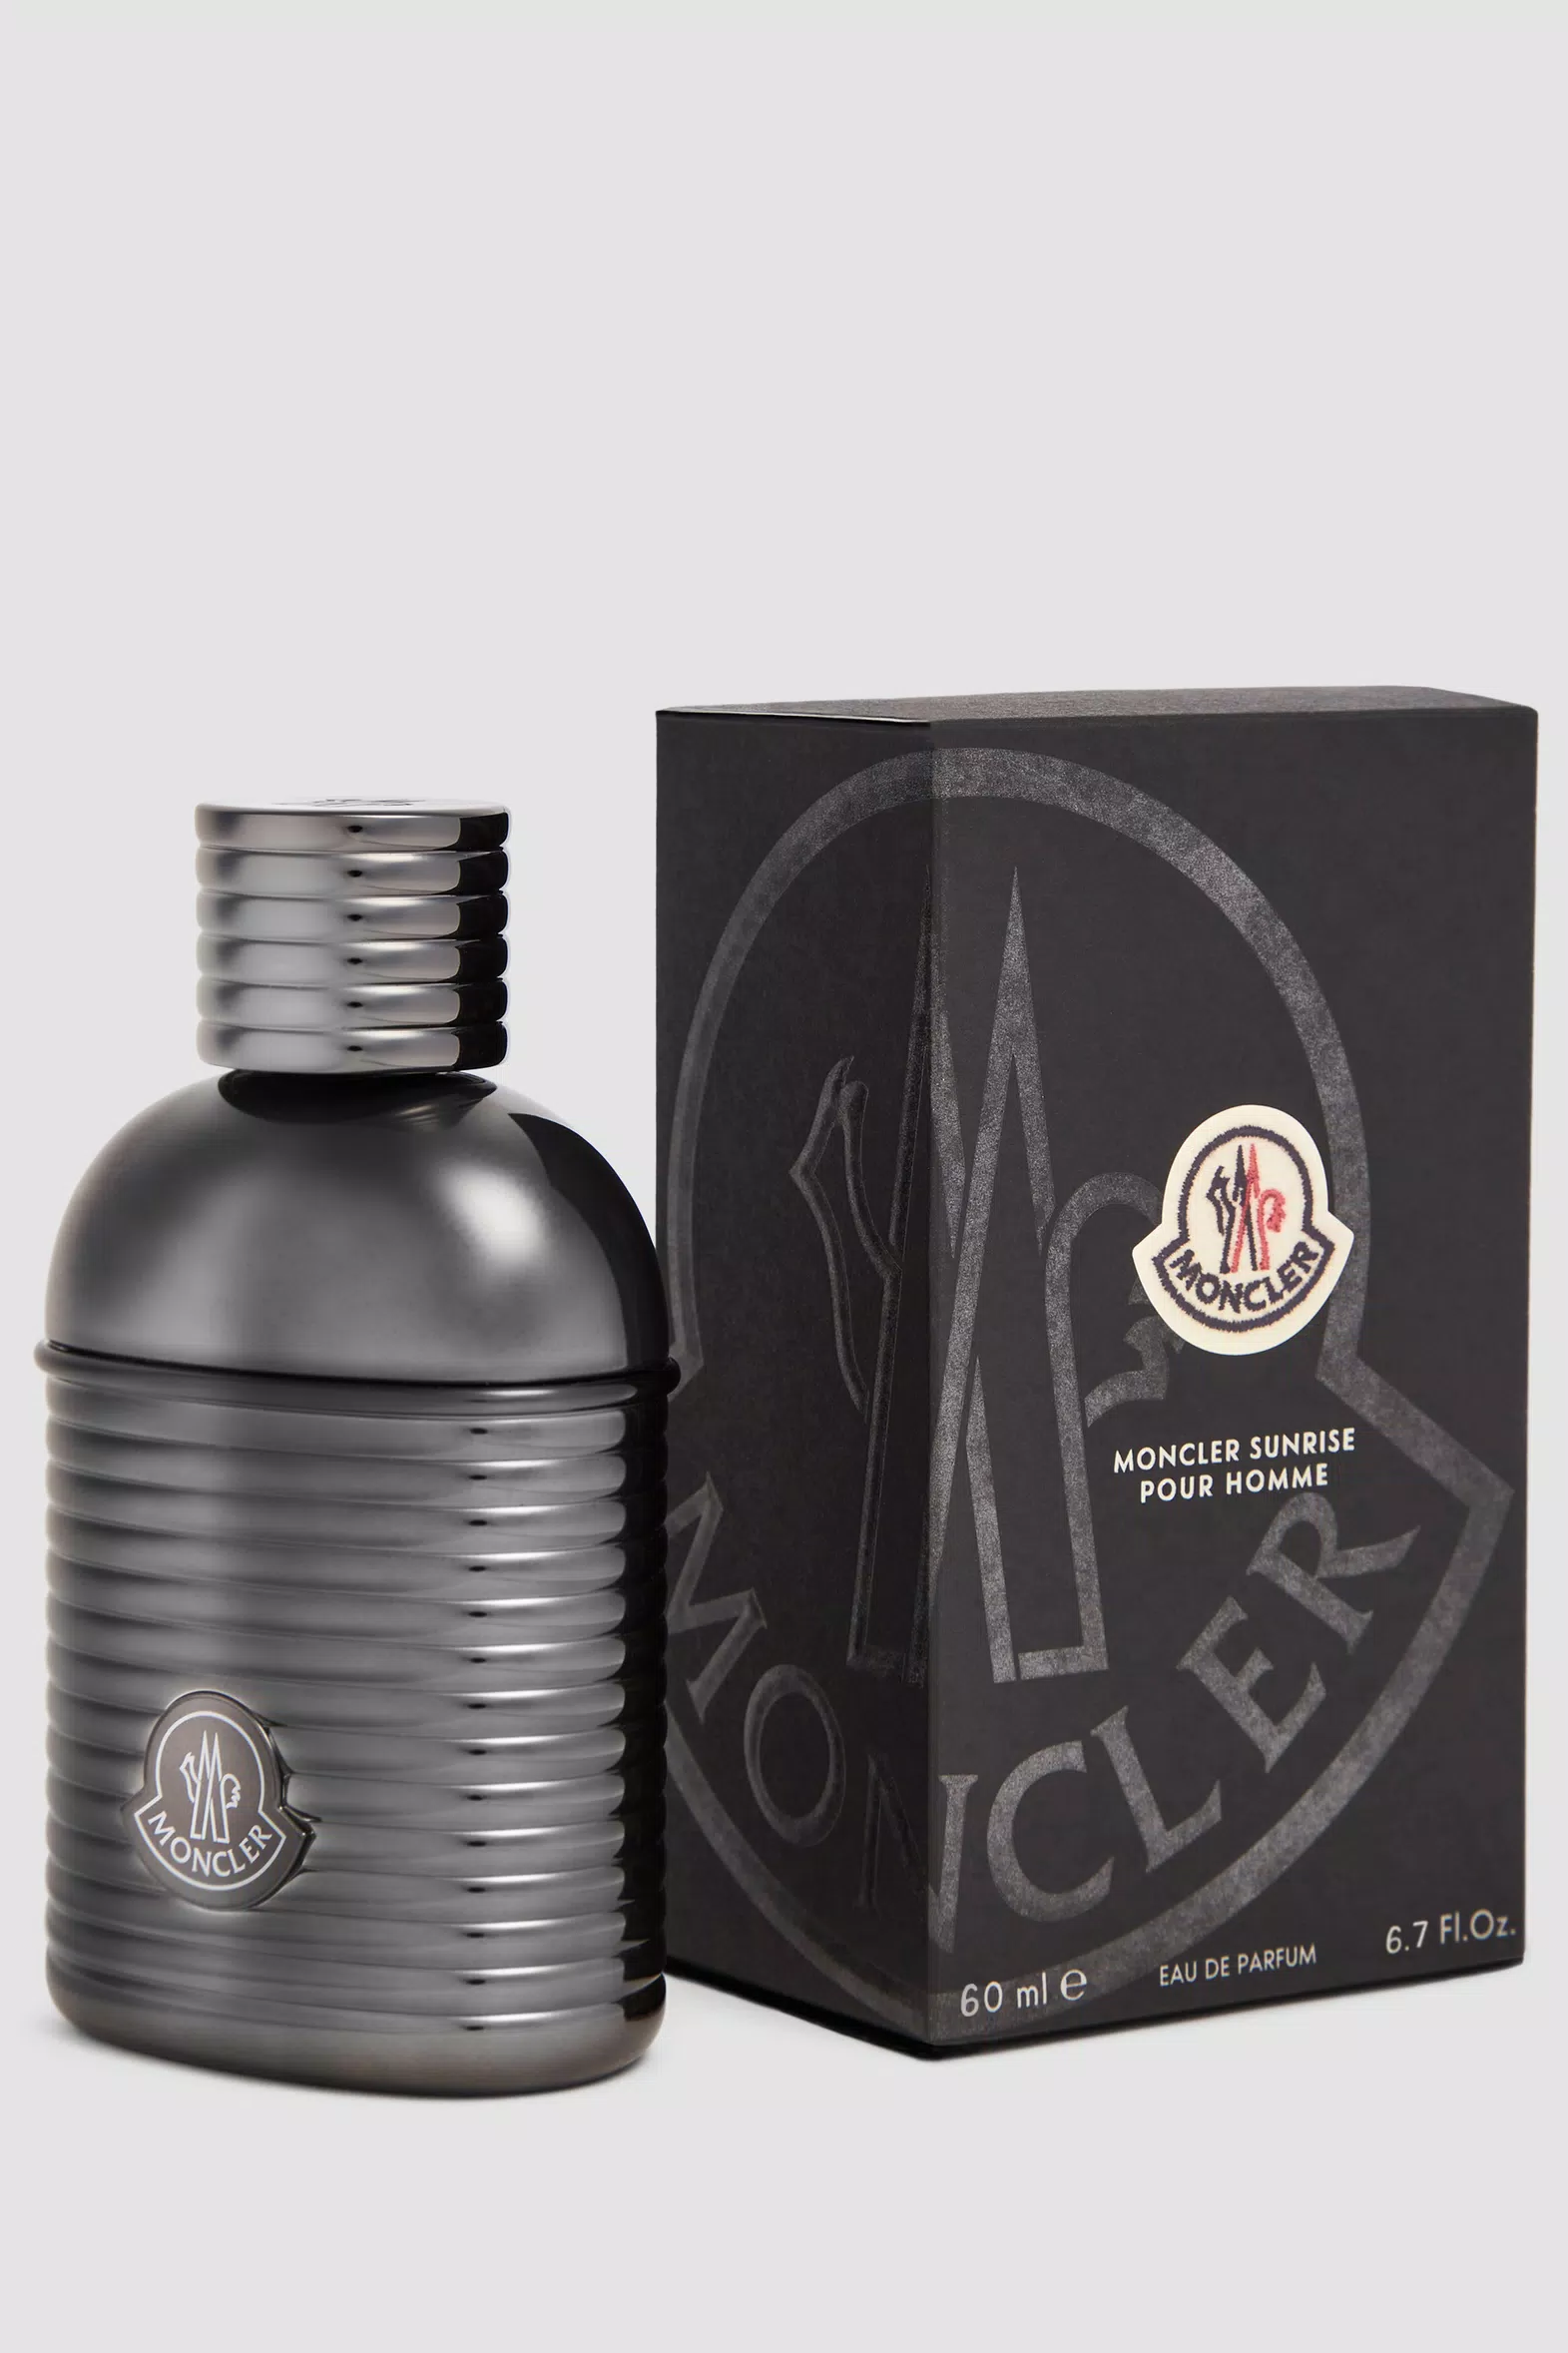 White Moncler Sunrise Pour Homme 60 ml - Perfumes for Men | Moncler NO